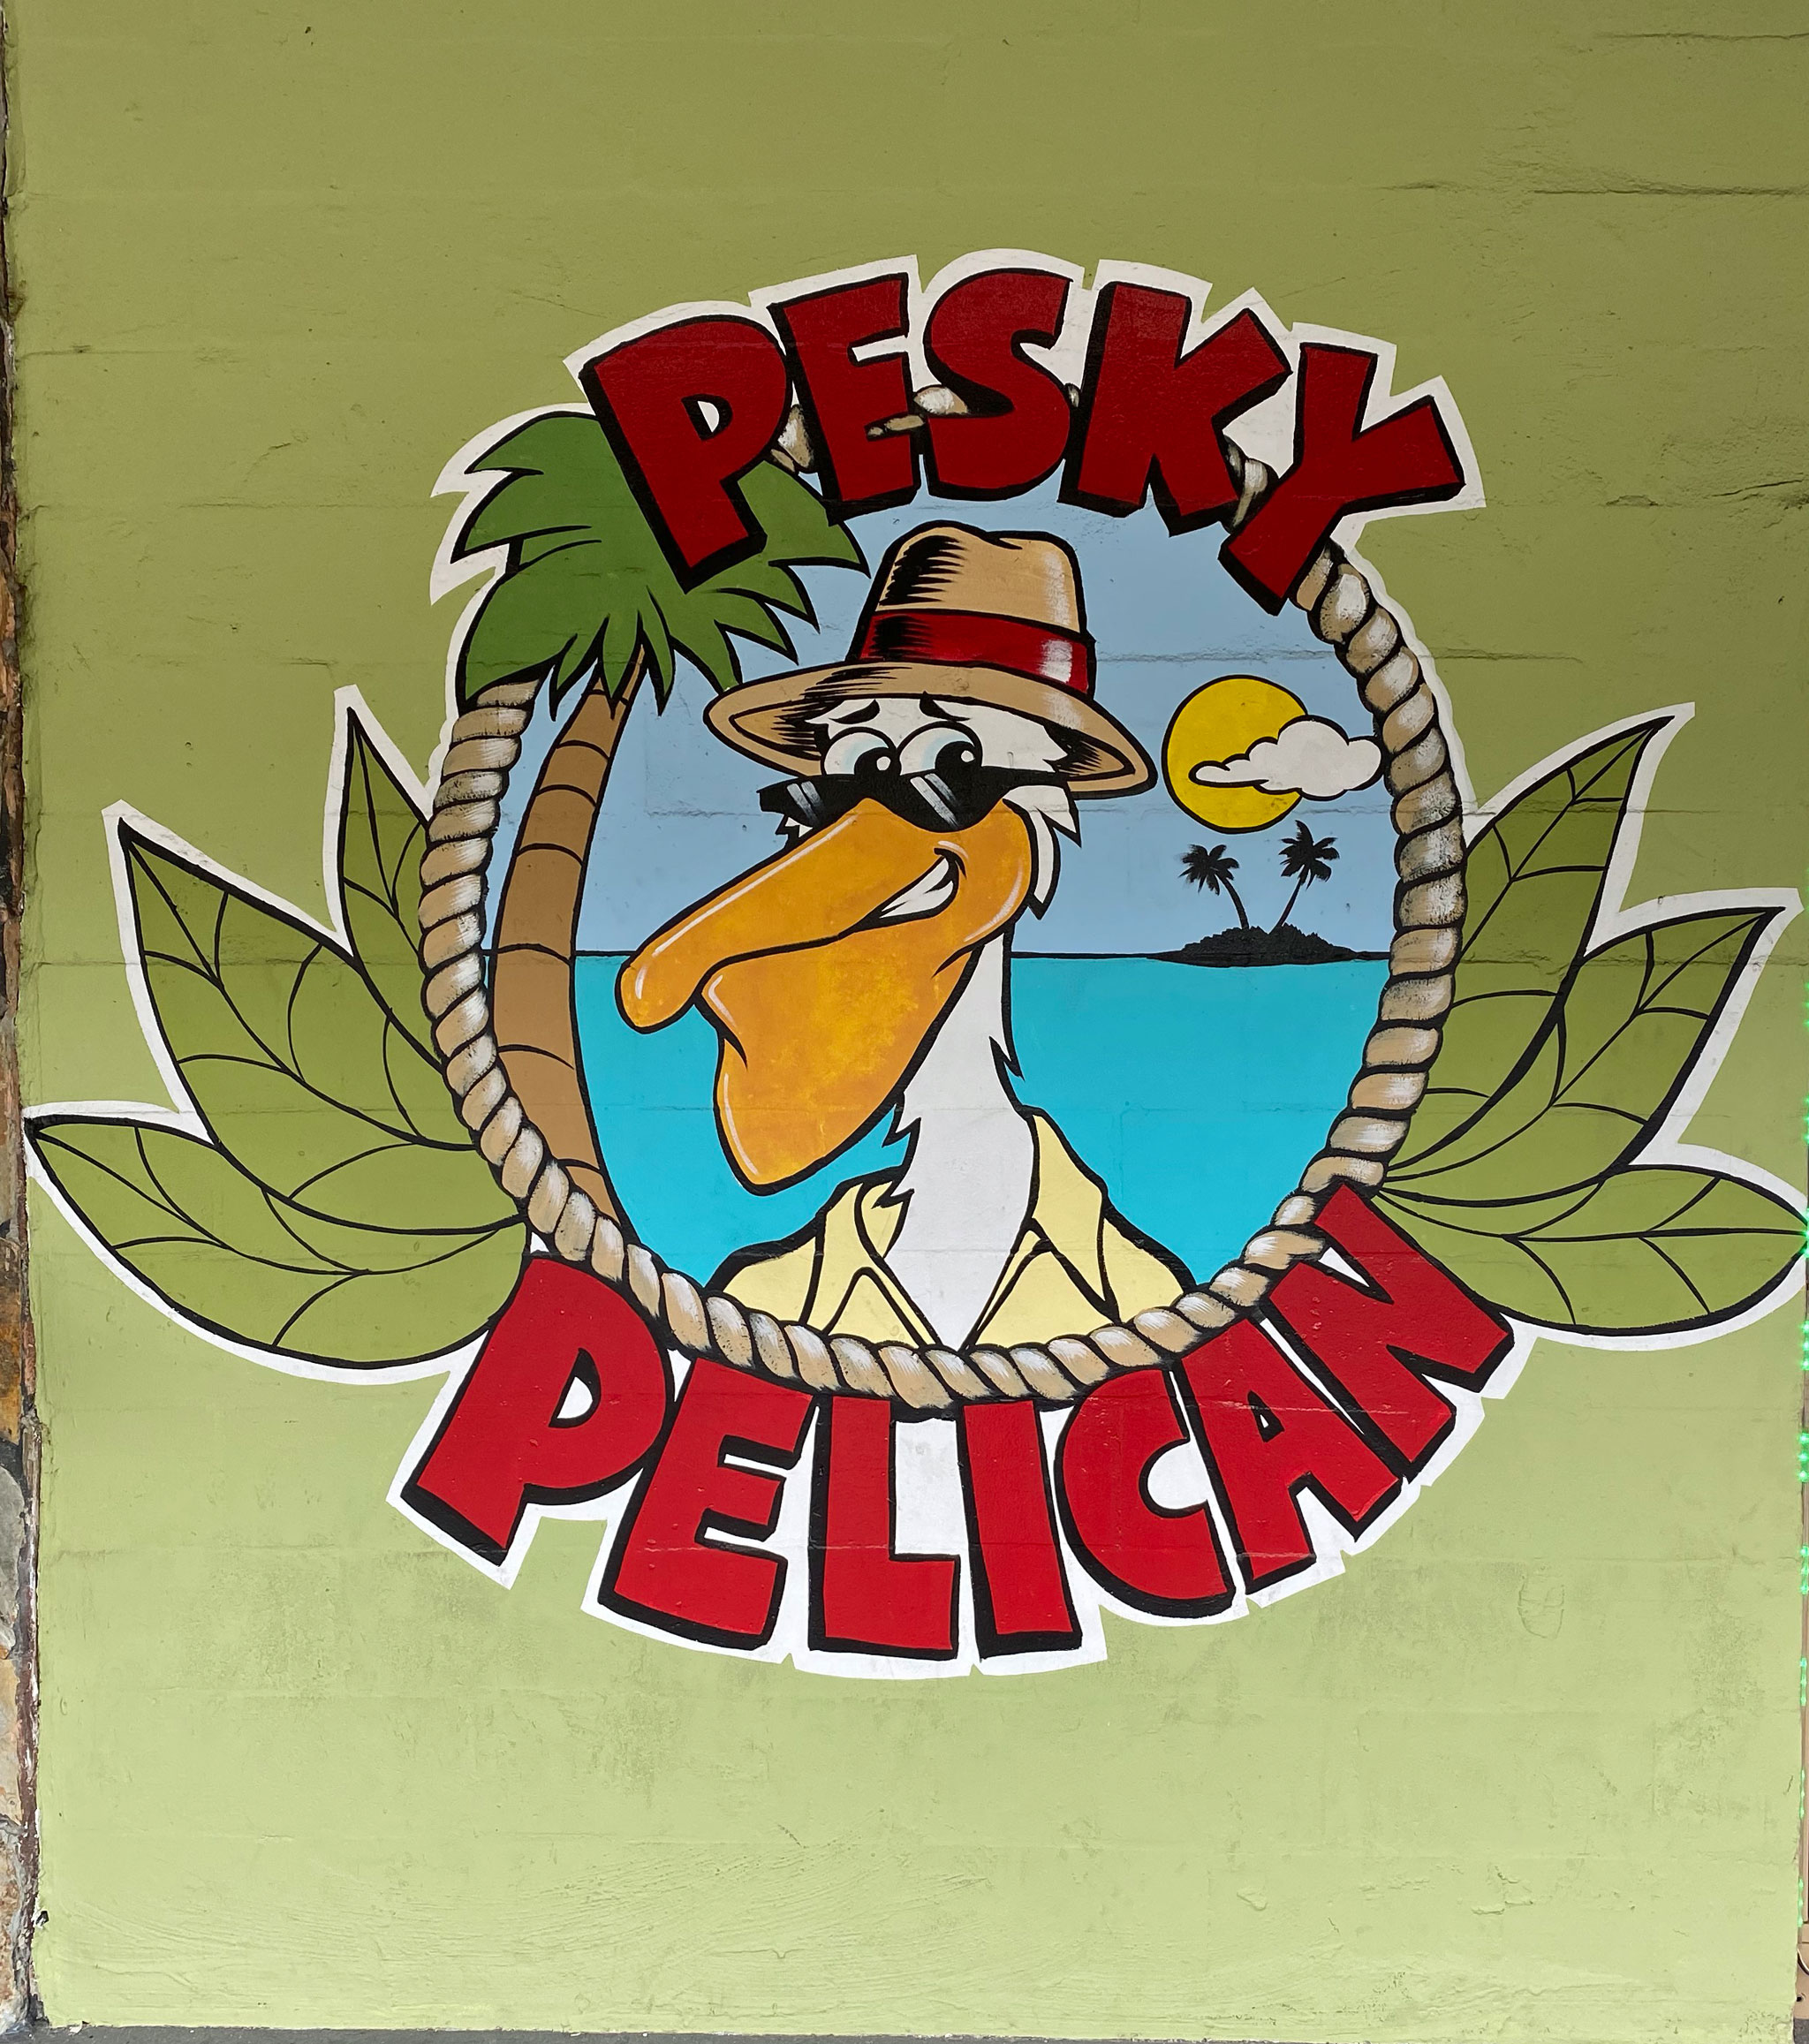 The Pesky Pelican Brew Pub